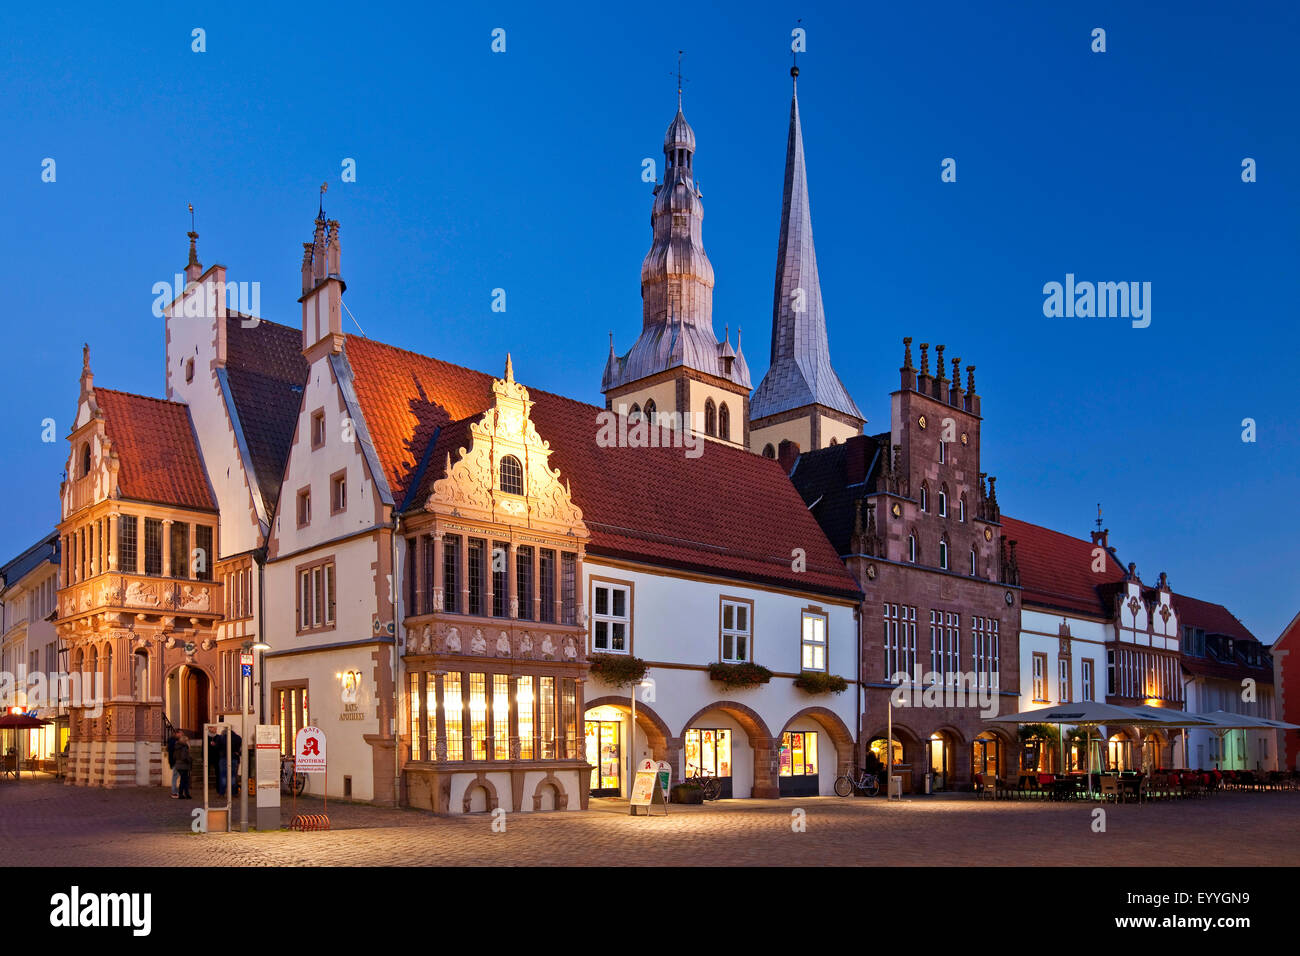 Place du marché avec l'hôtel de ville et église Saint Nicolas, l'Allemagne, en Rhénanie du Nord-Westphalie, à l'Est de la Westphalie, Lemgo Banque D'Images